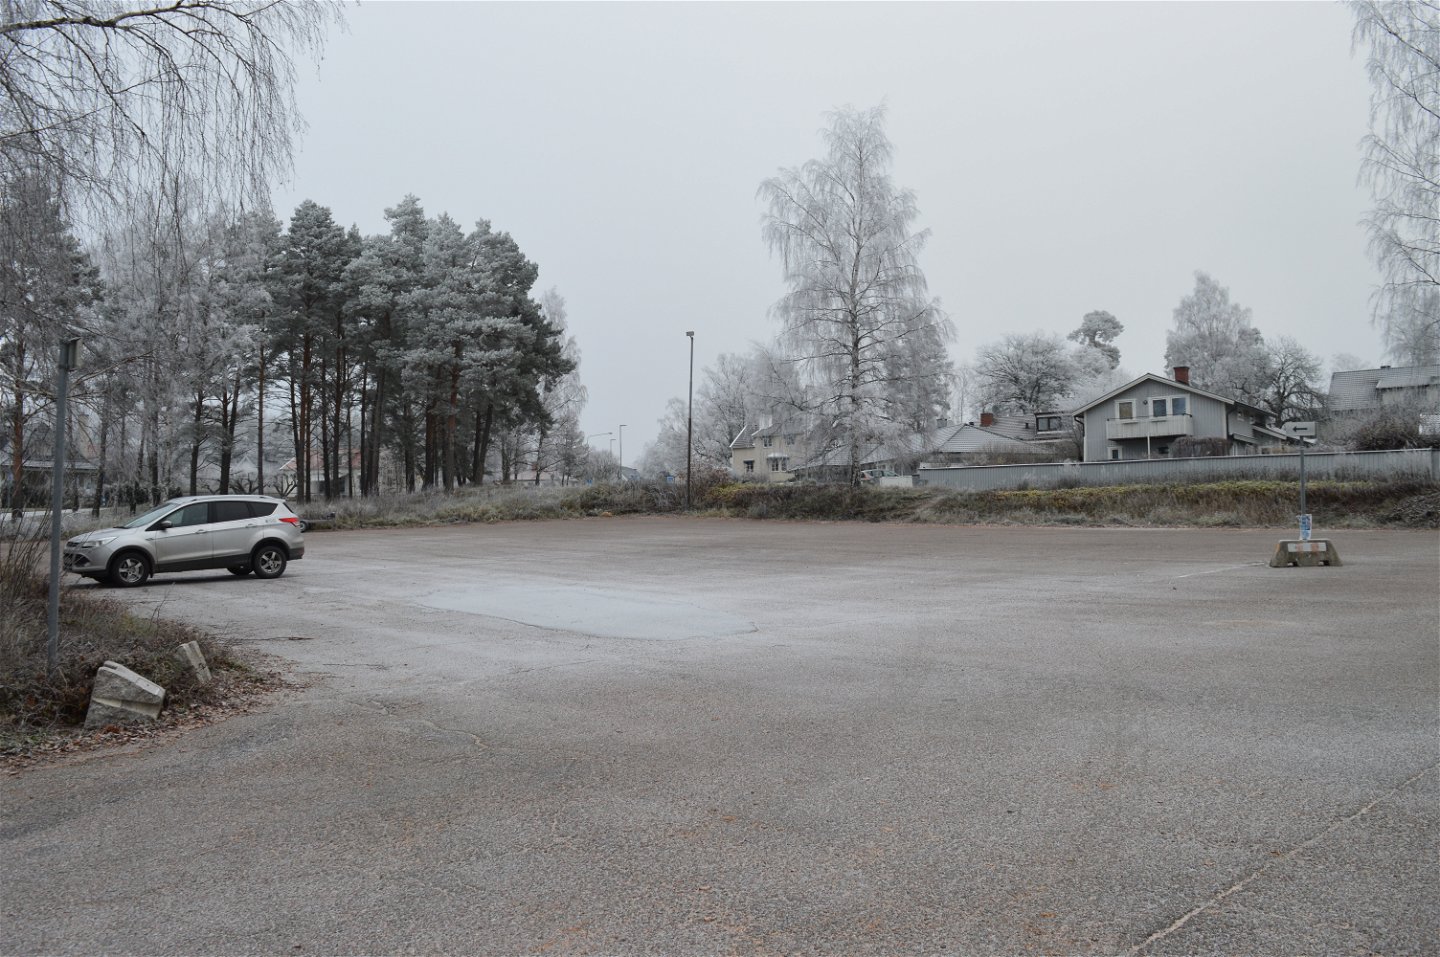 En bil står på en stor asfalterad parkering som lutar svagt nedåt. I bakgrunden står bostadshus och det finns gatubelysning på platsen.